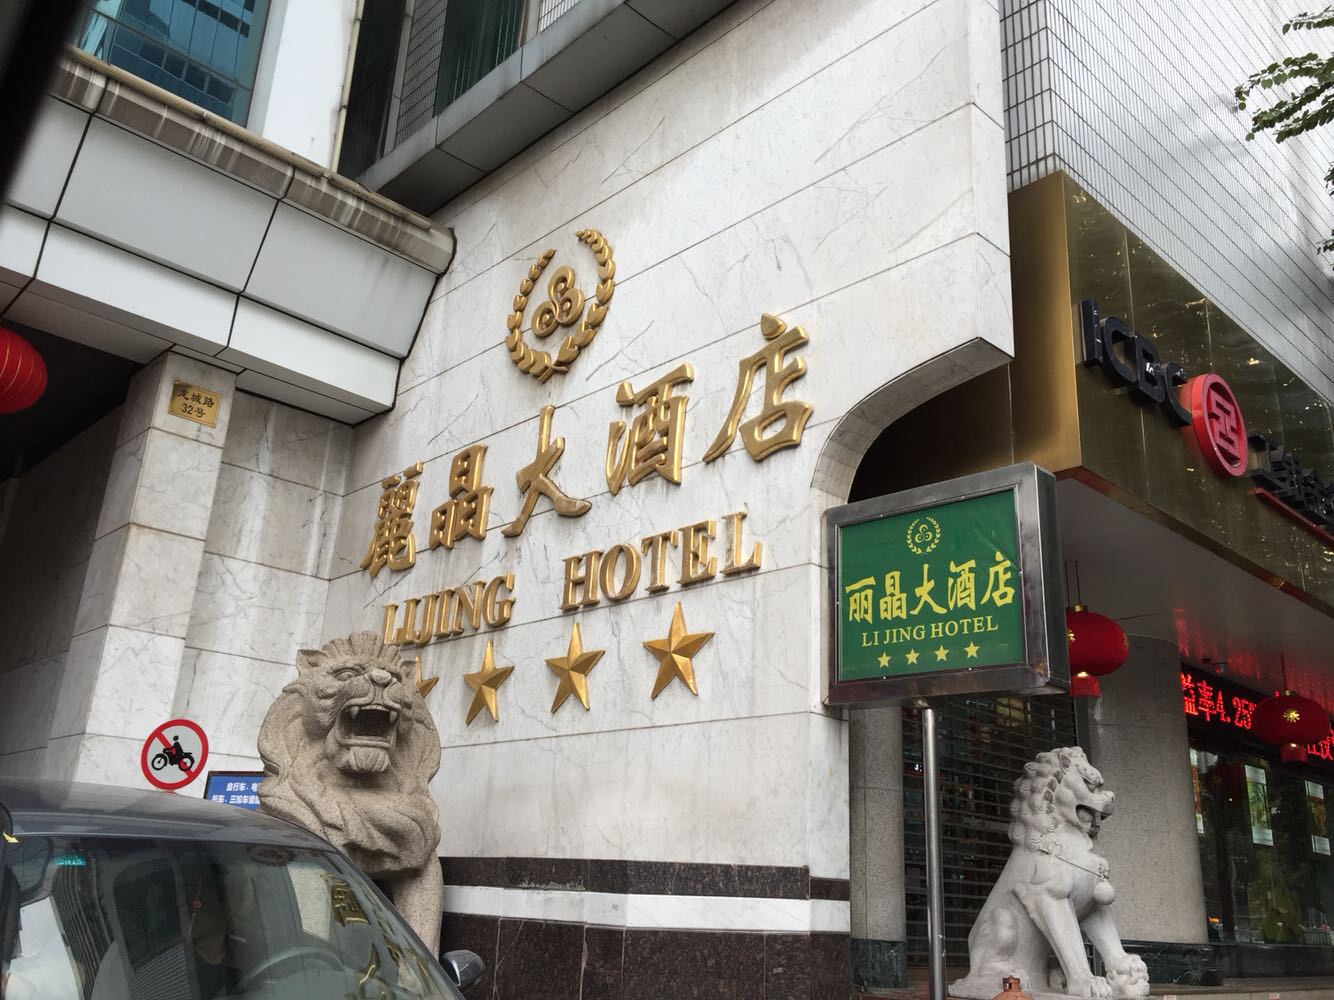 香港丽景酒店 重庆丽晶酒店 丽晶酒店集团 北京